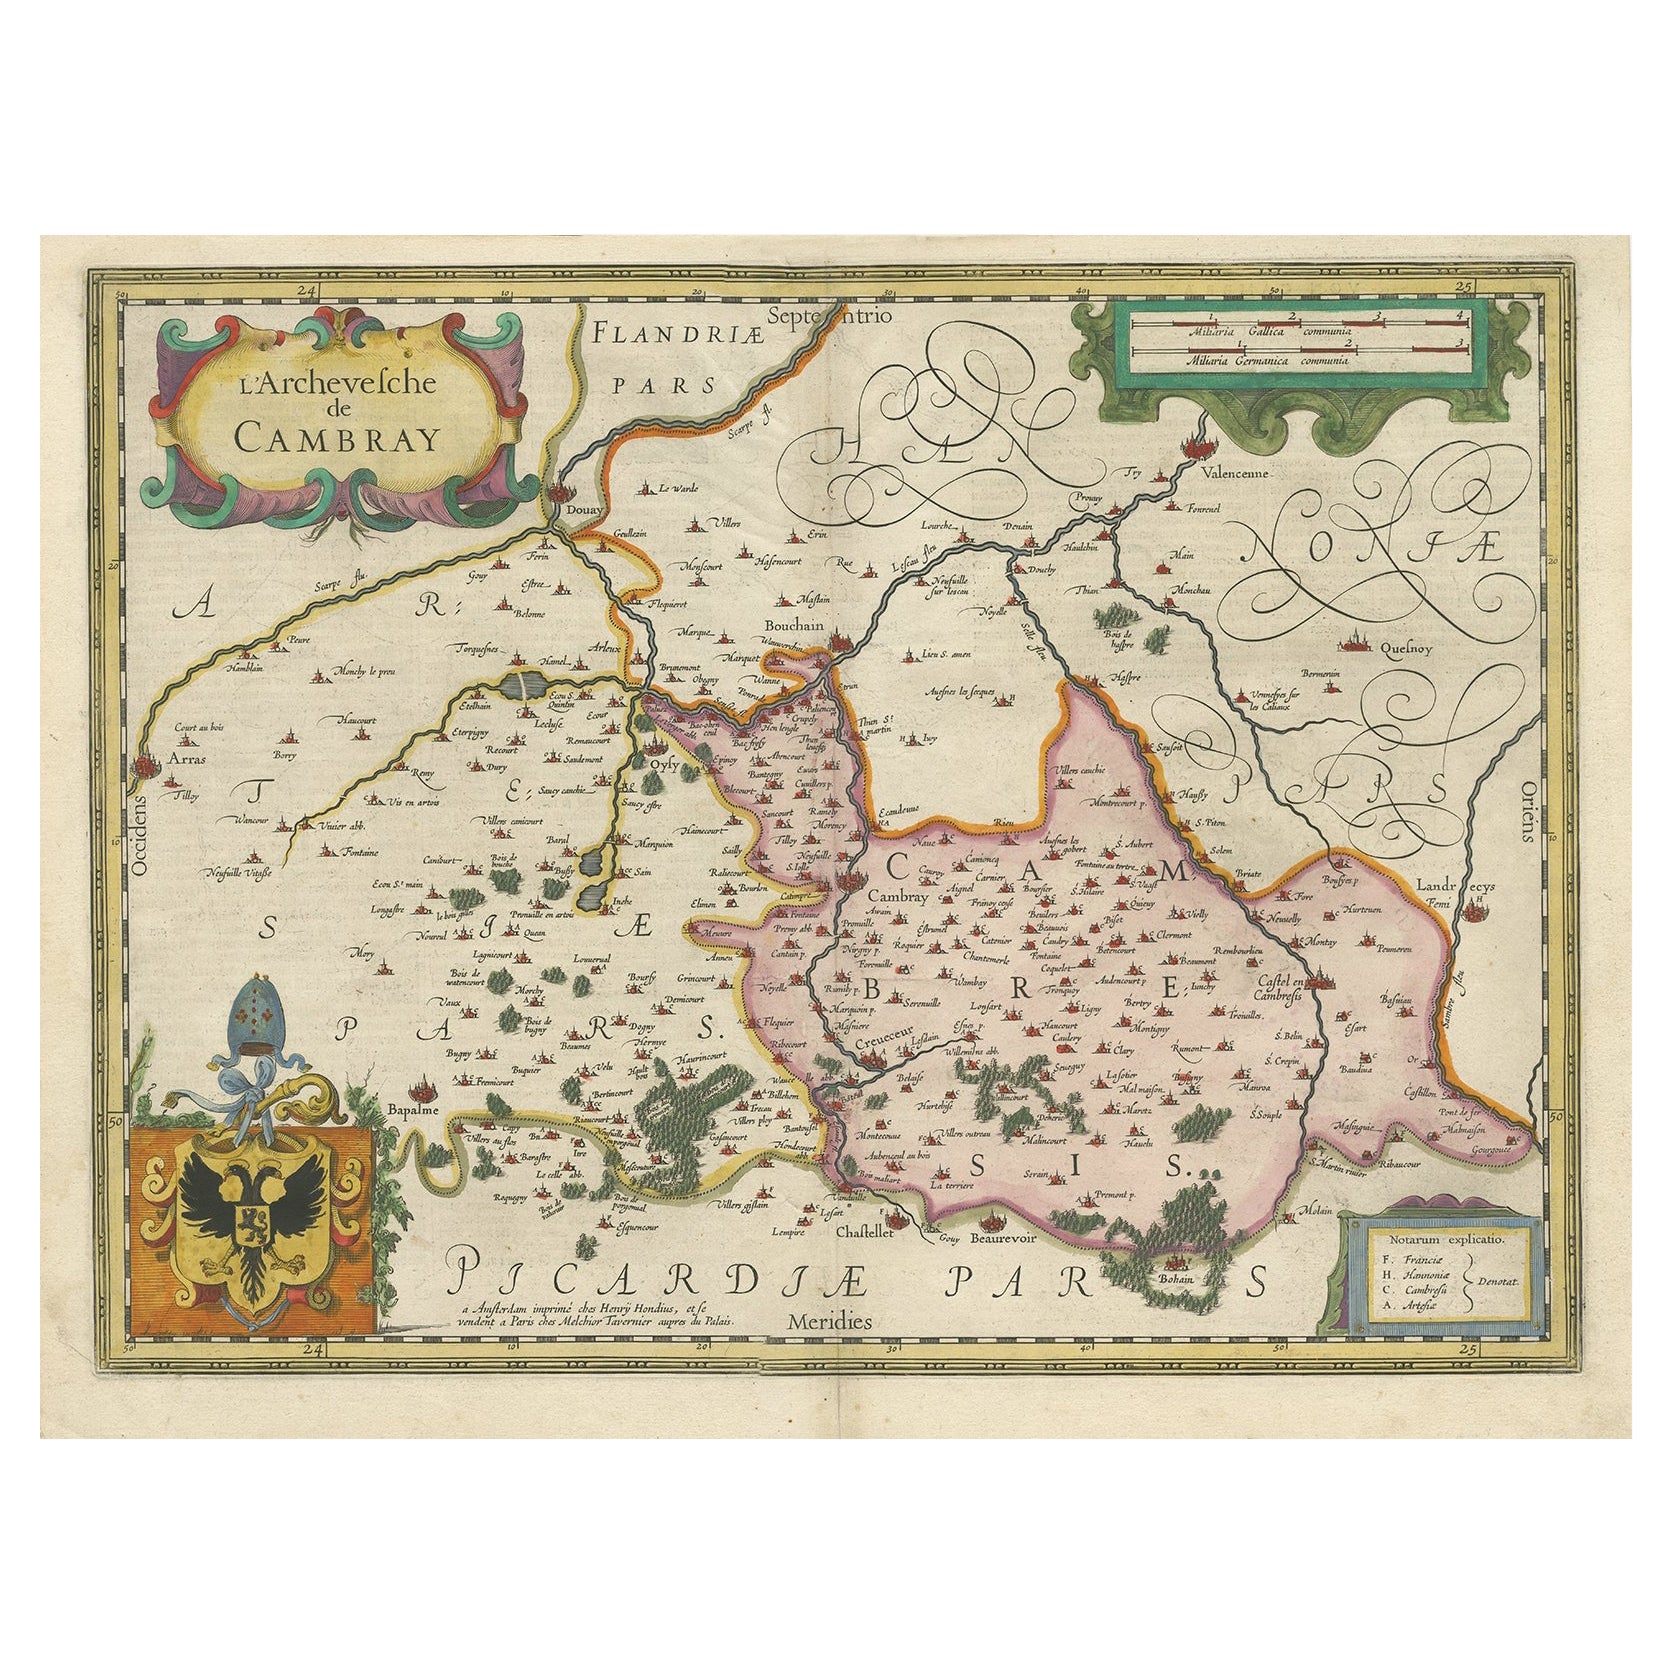 Carte décorative ancienne de la région de la Cambrai, France, vers 1630